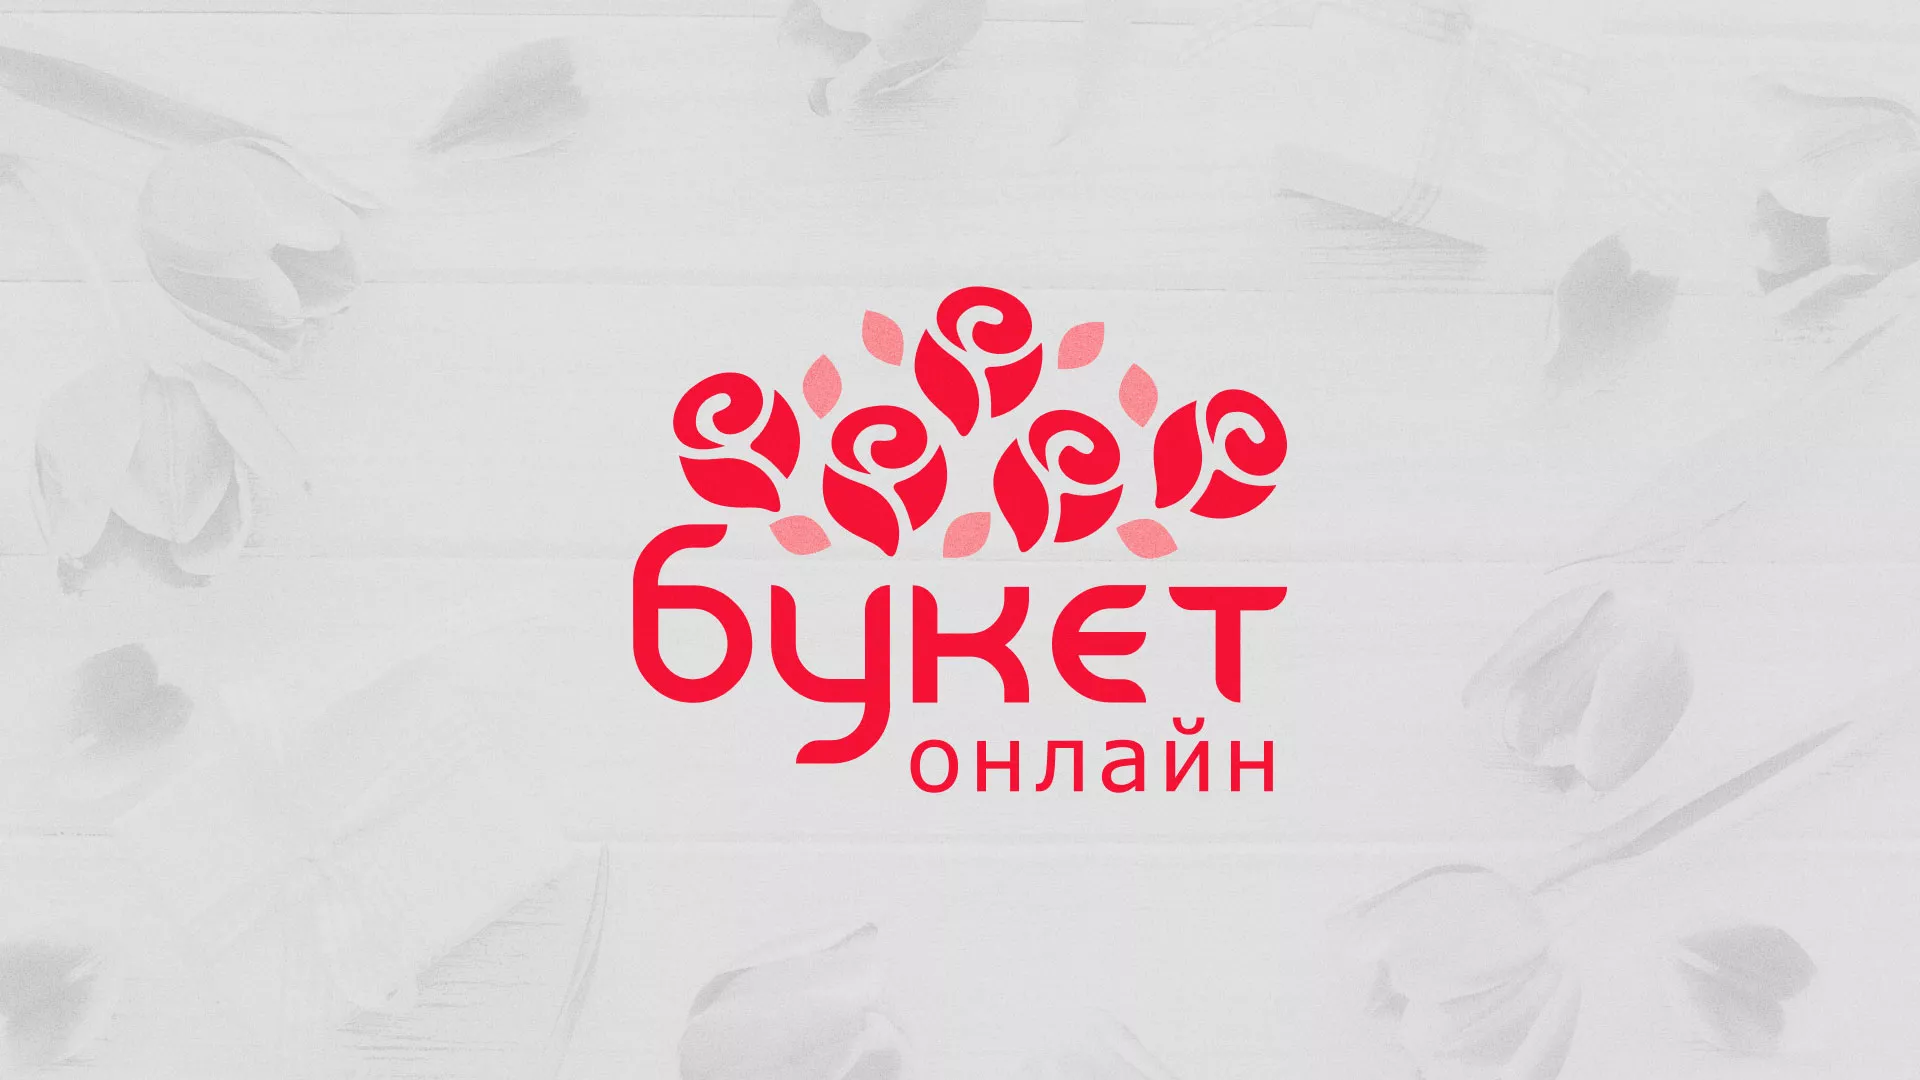 Создание интернет-магазина «Букет-онлайн» по цветам в Торжке